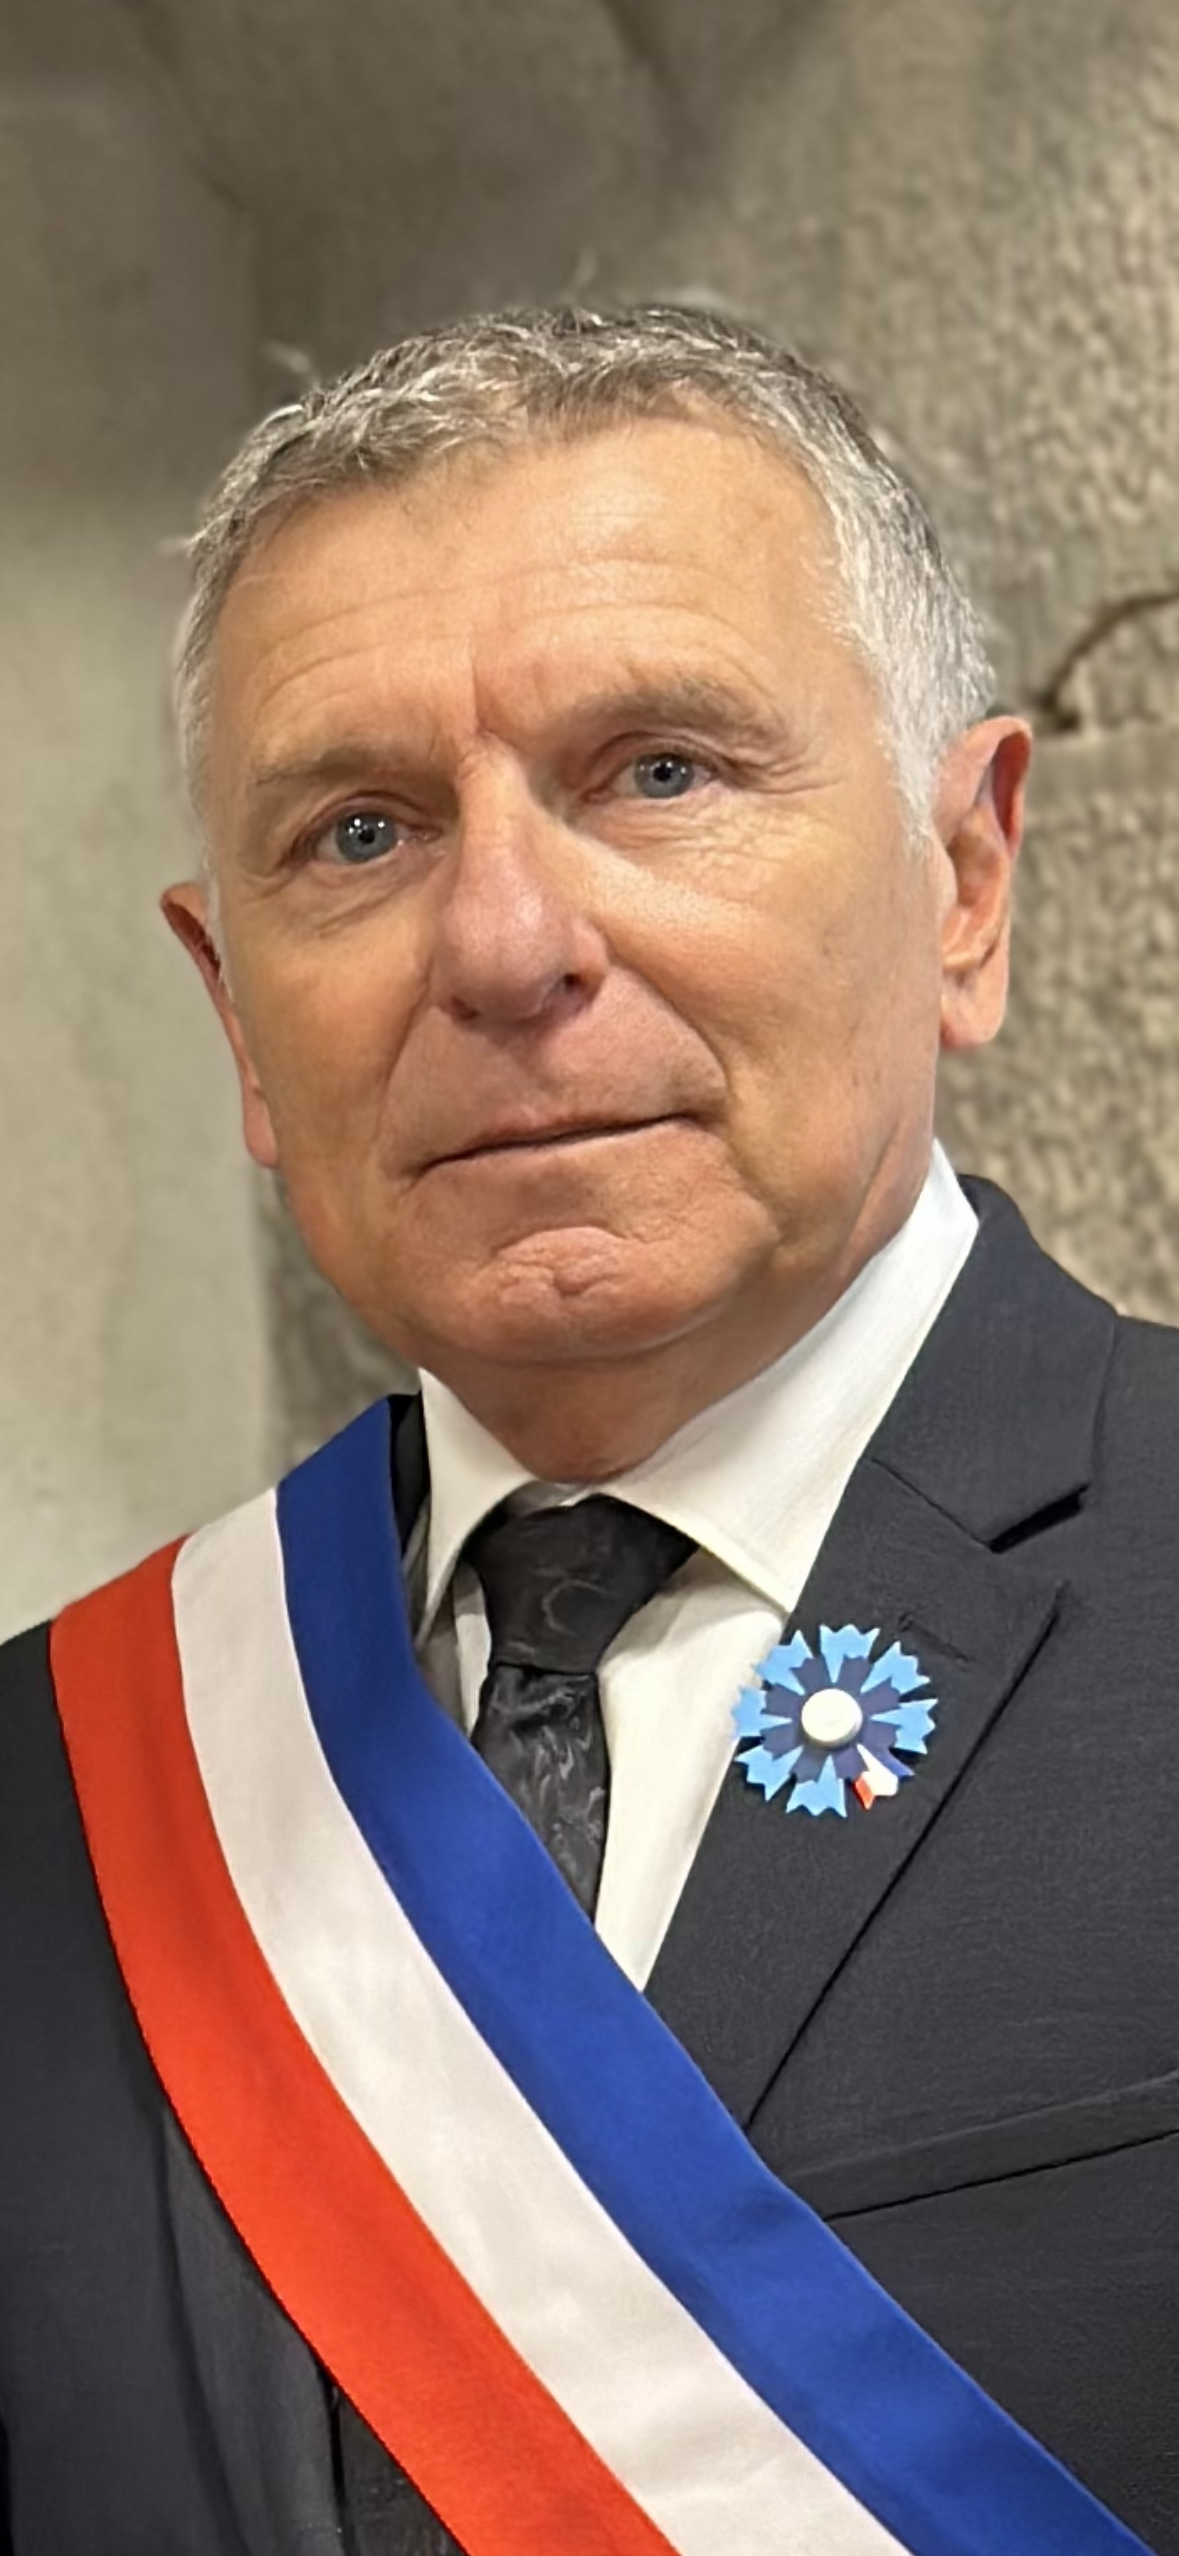 Michel Gros - maire - La Roquebrussanne .PNG (8.28 MB)